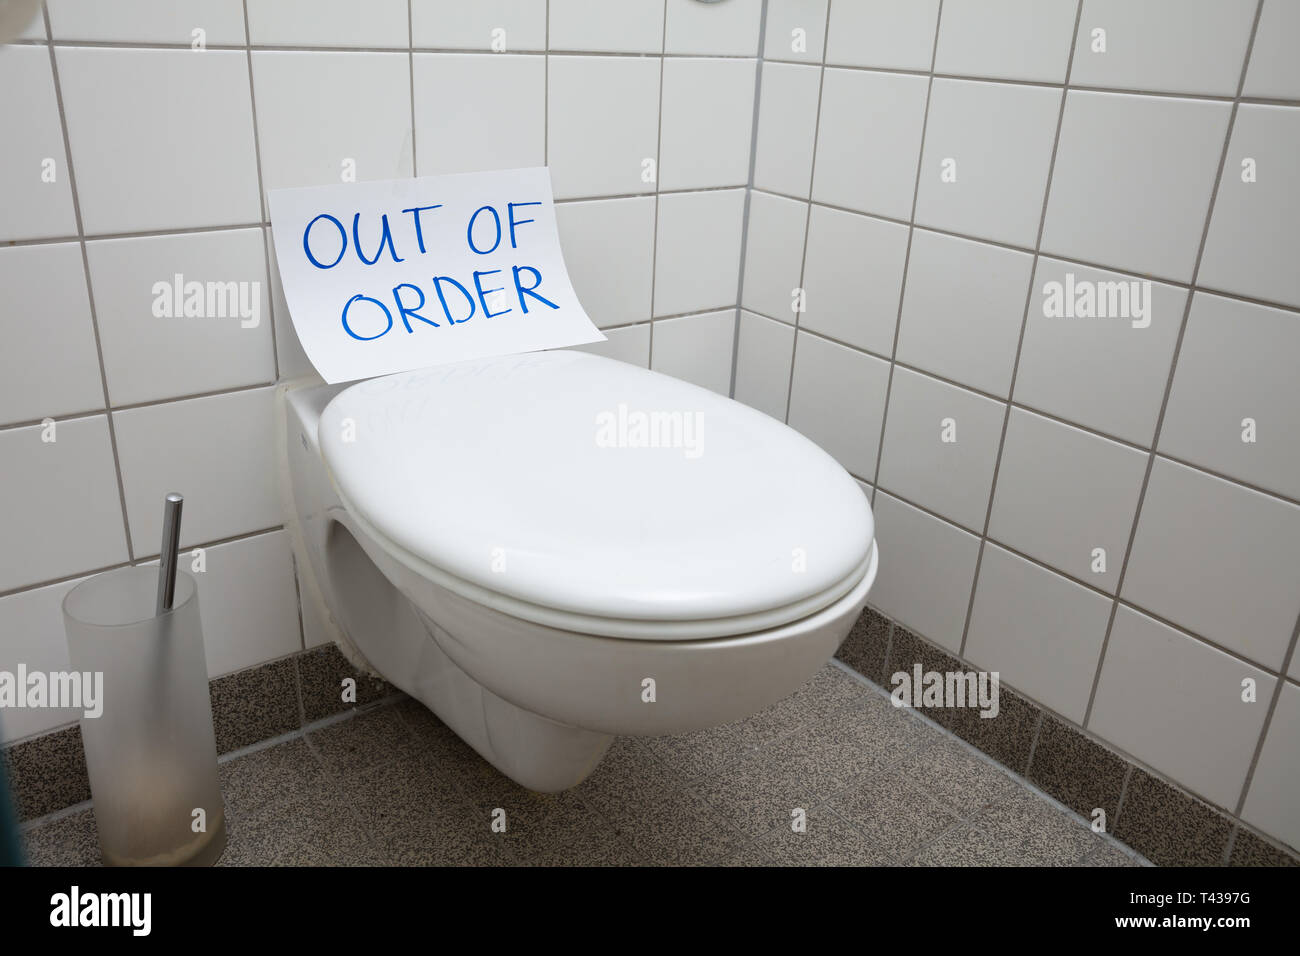 Text der Nachricht auf Papier über die Toilette im Badezimmer geschrieben  Stockfotografie - Alamy